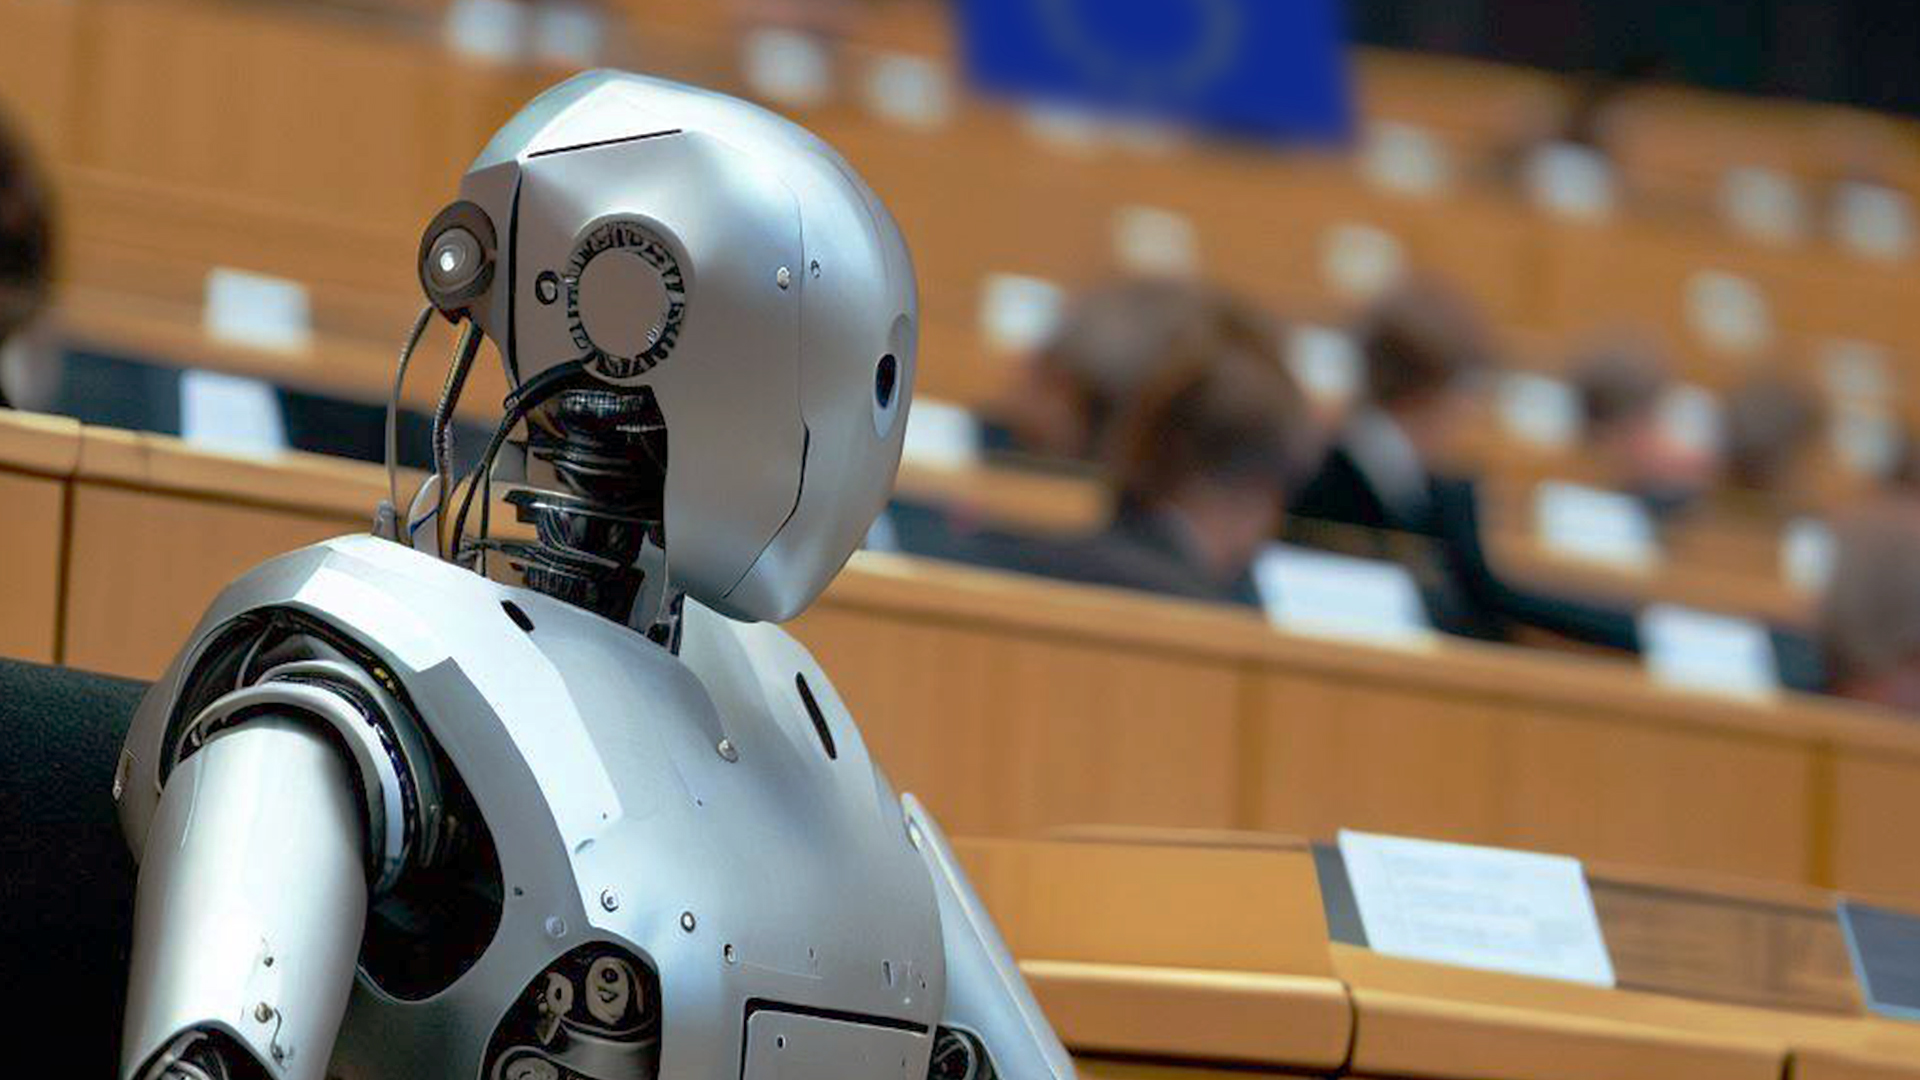  L'UE adopte un projet de loi pour encadrer l'IA